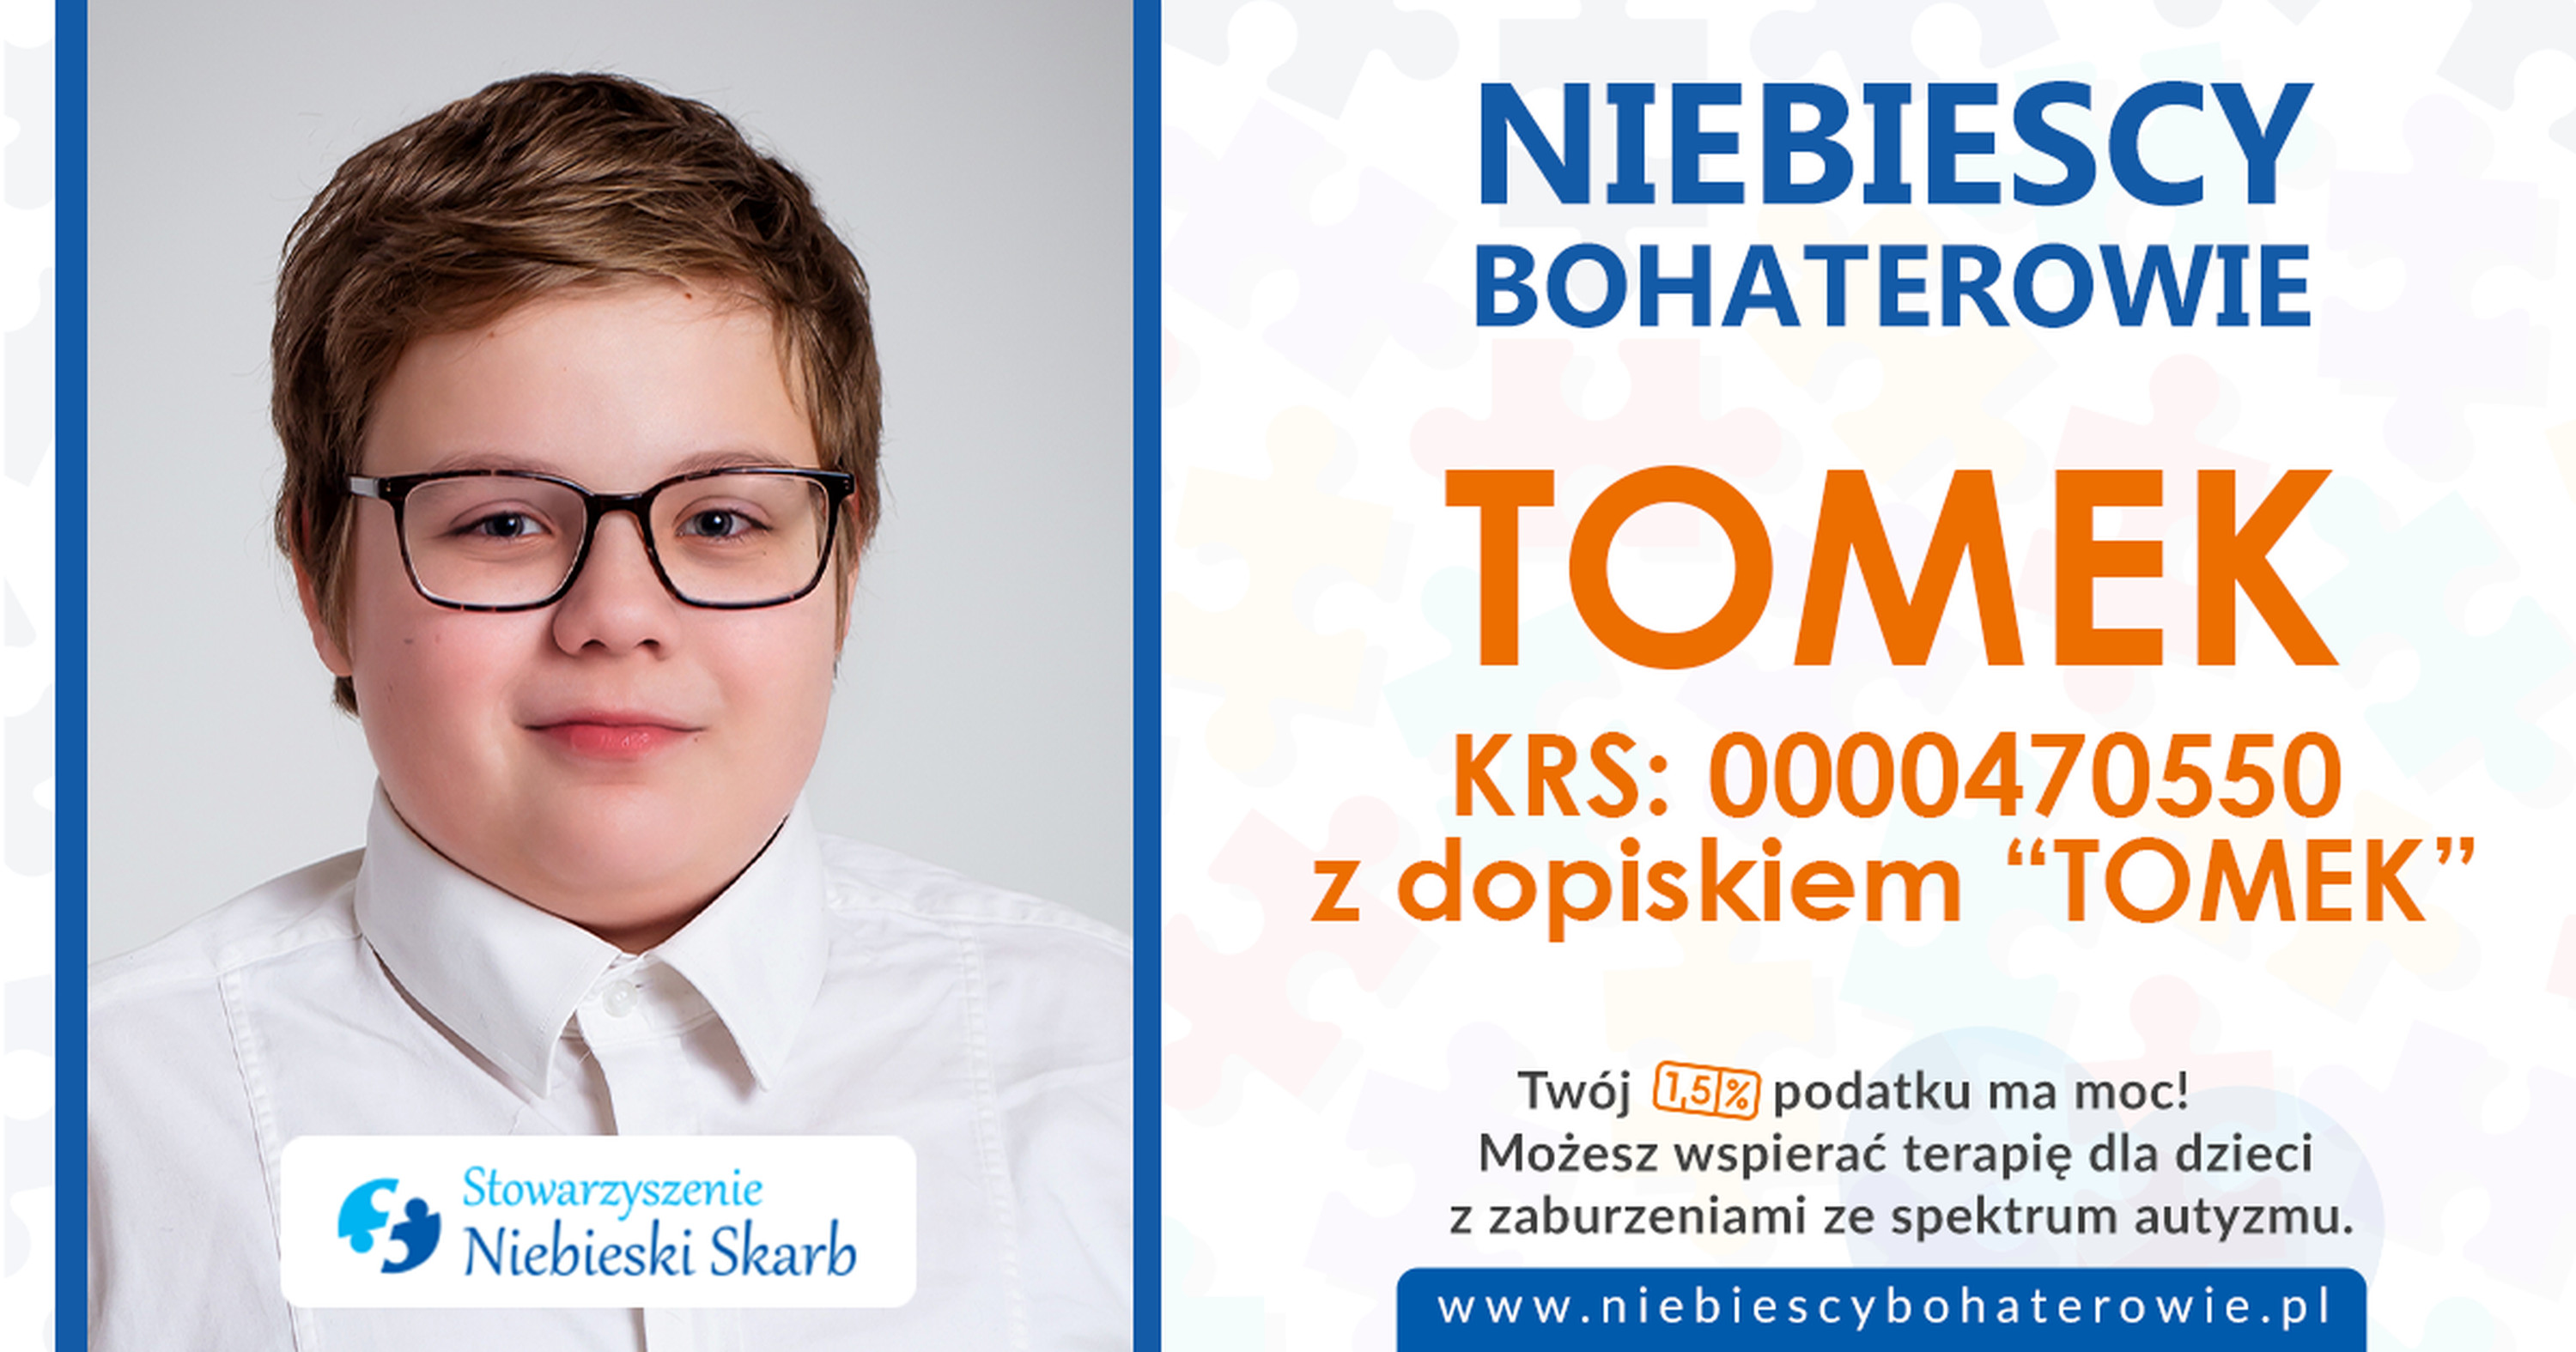 Tomek - Drużyna Niebieskich Bohaterów